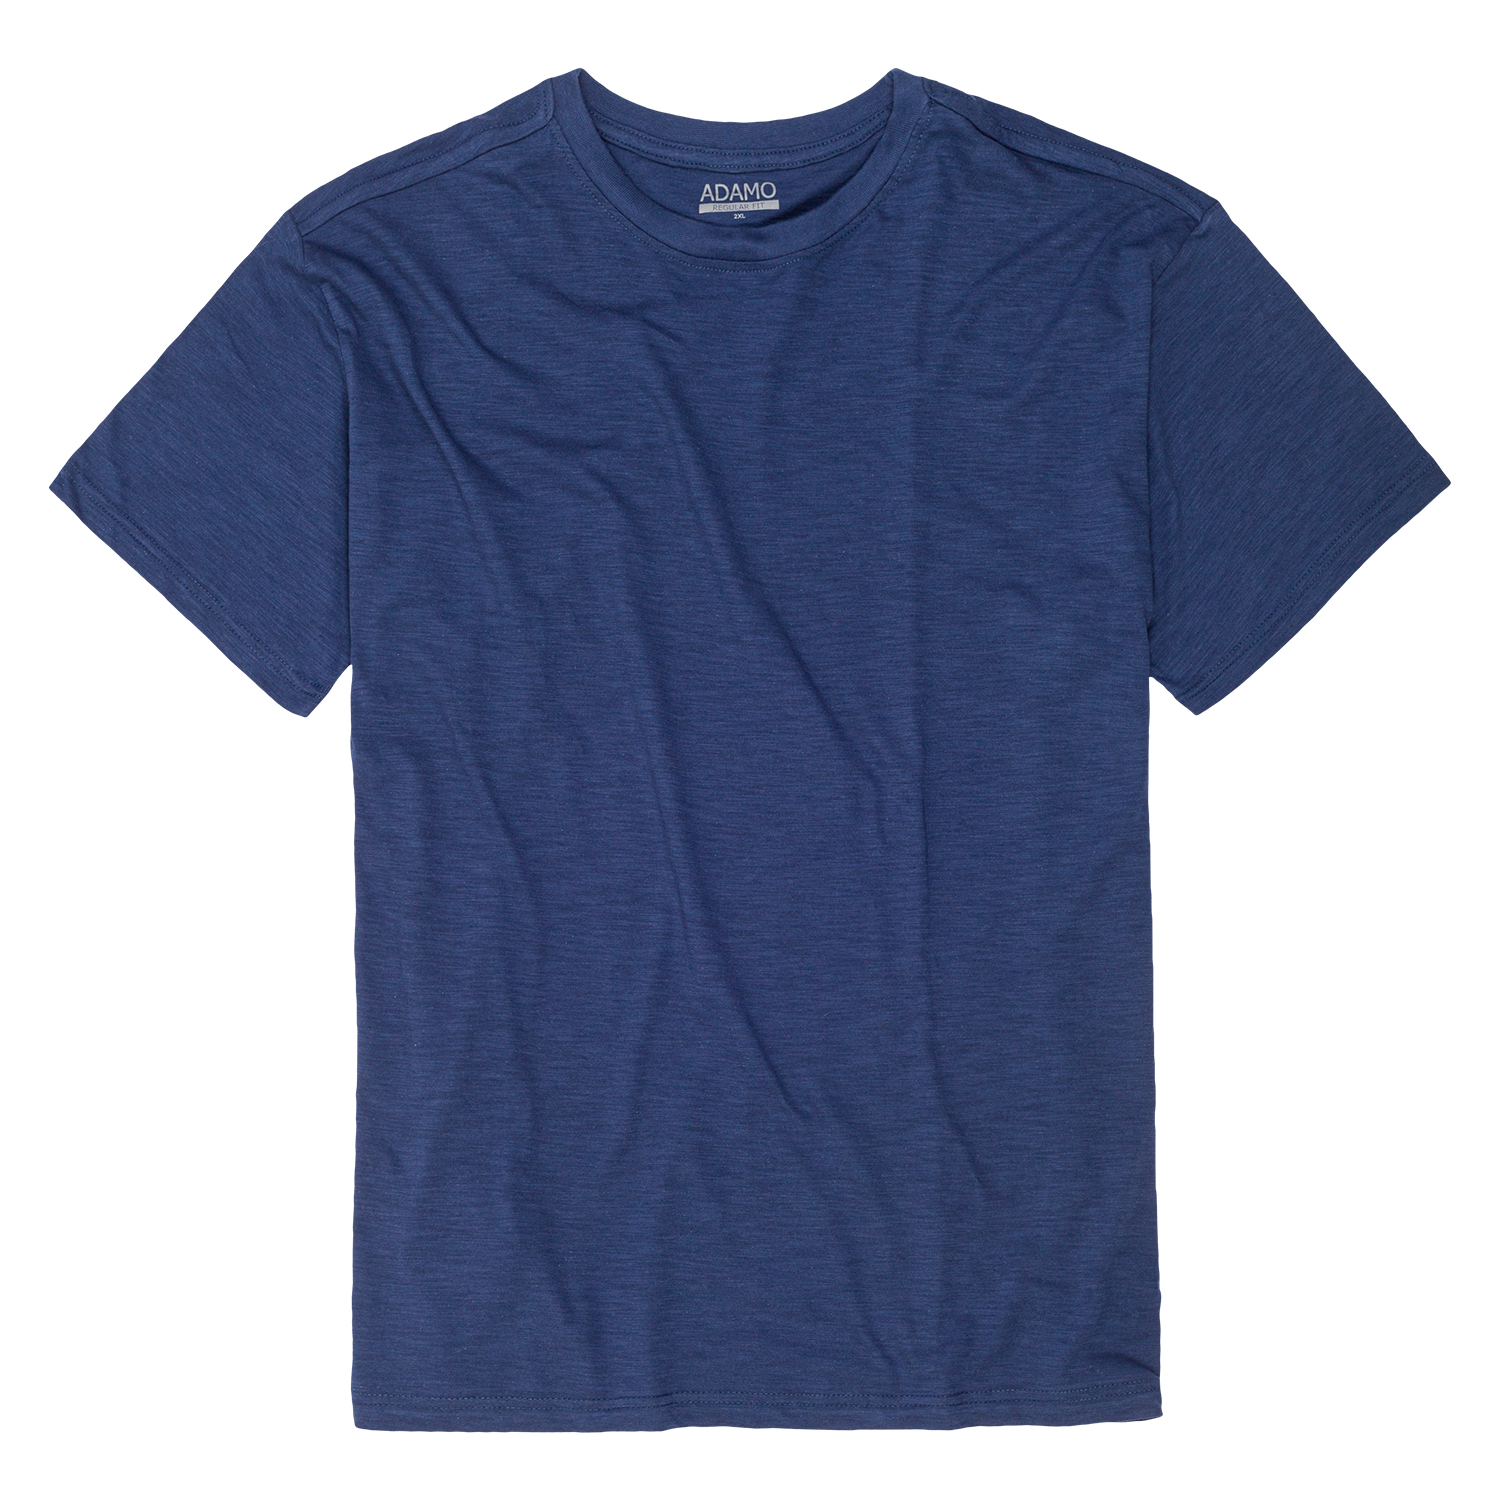 T-shirt série KEVIN by ADAMO jusqu'à la grande taille 12XL - couleur: bleu jeans